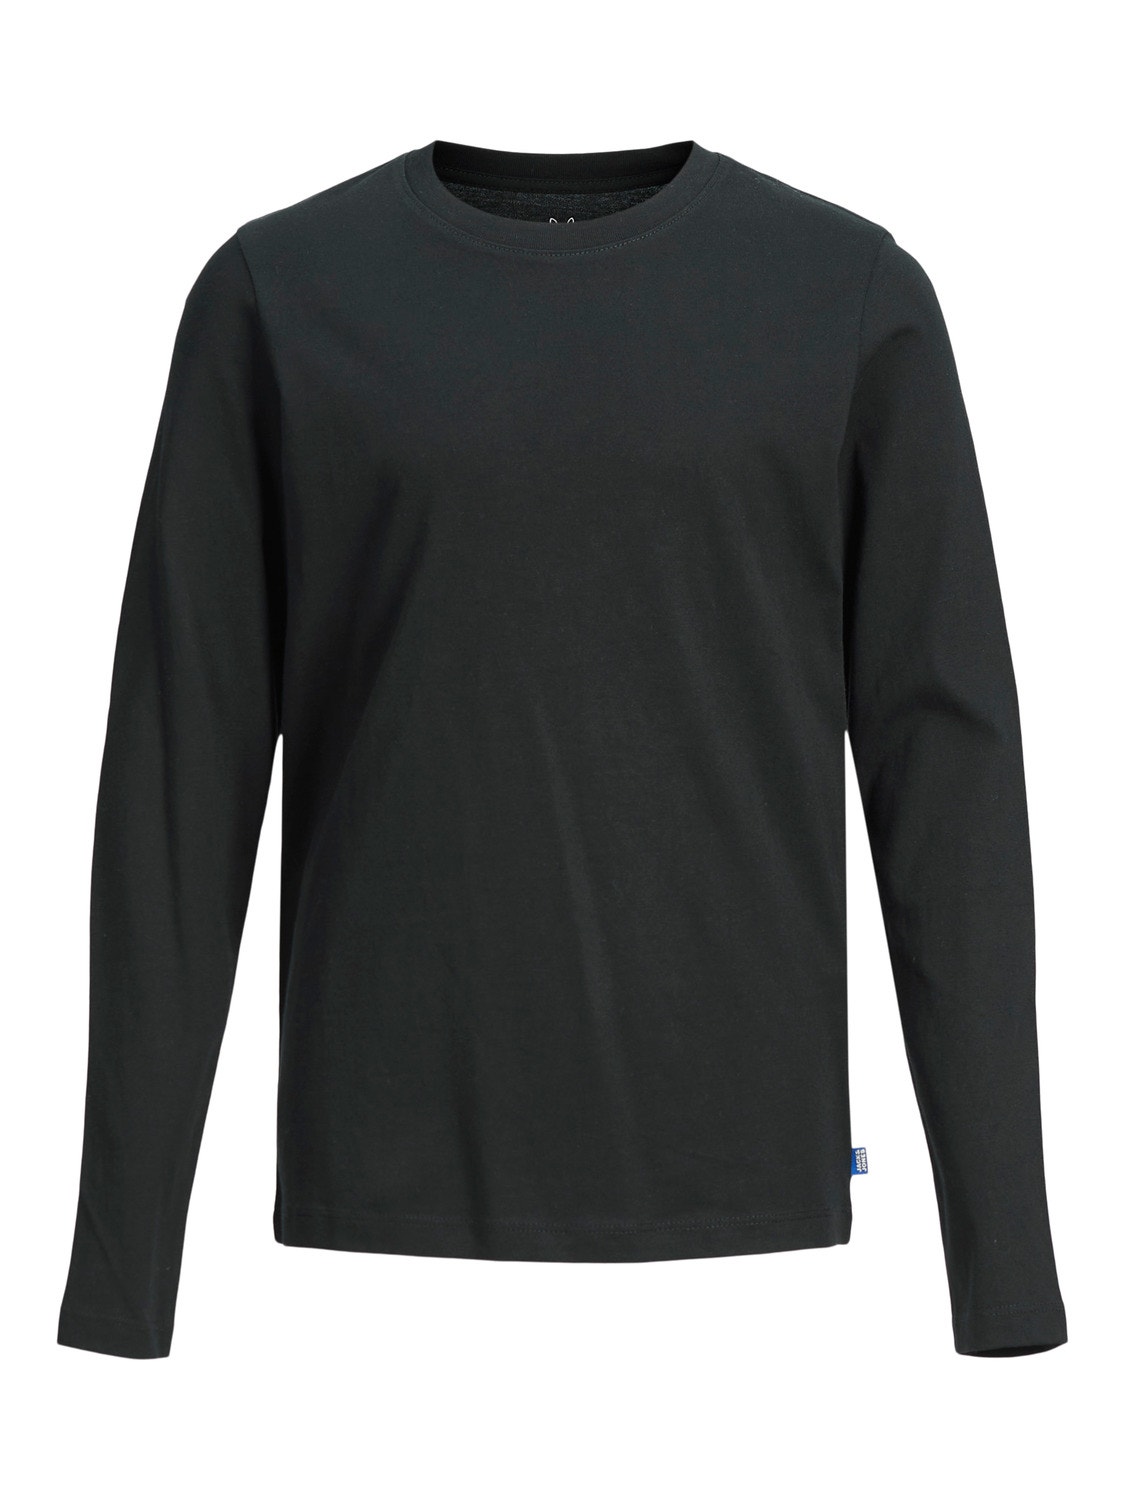 Jack & Jones Plain T-shirt Mini -Black - 12257381